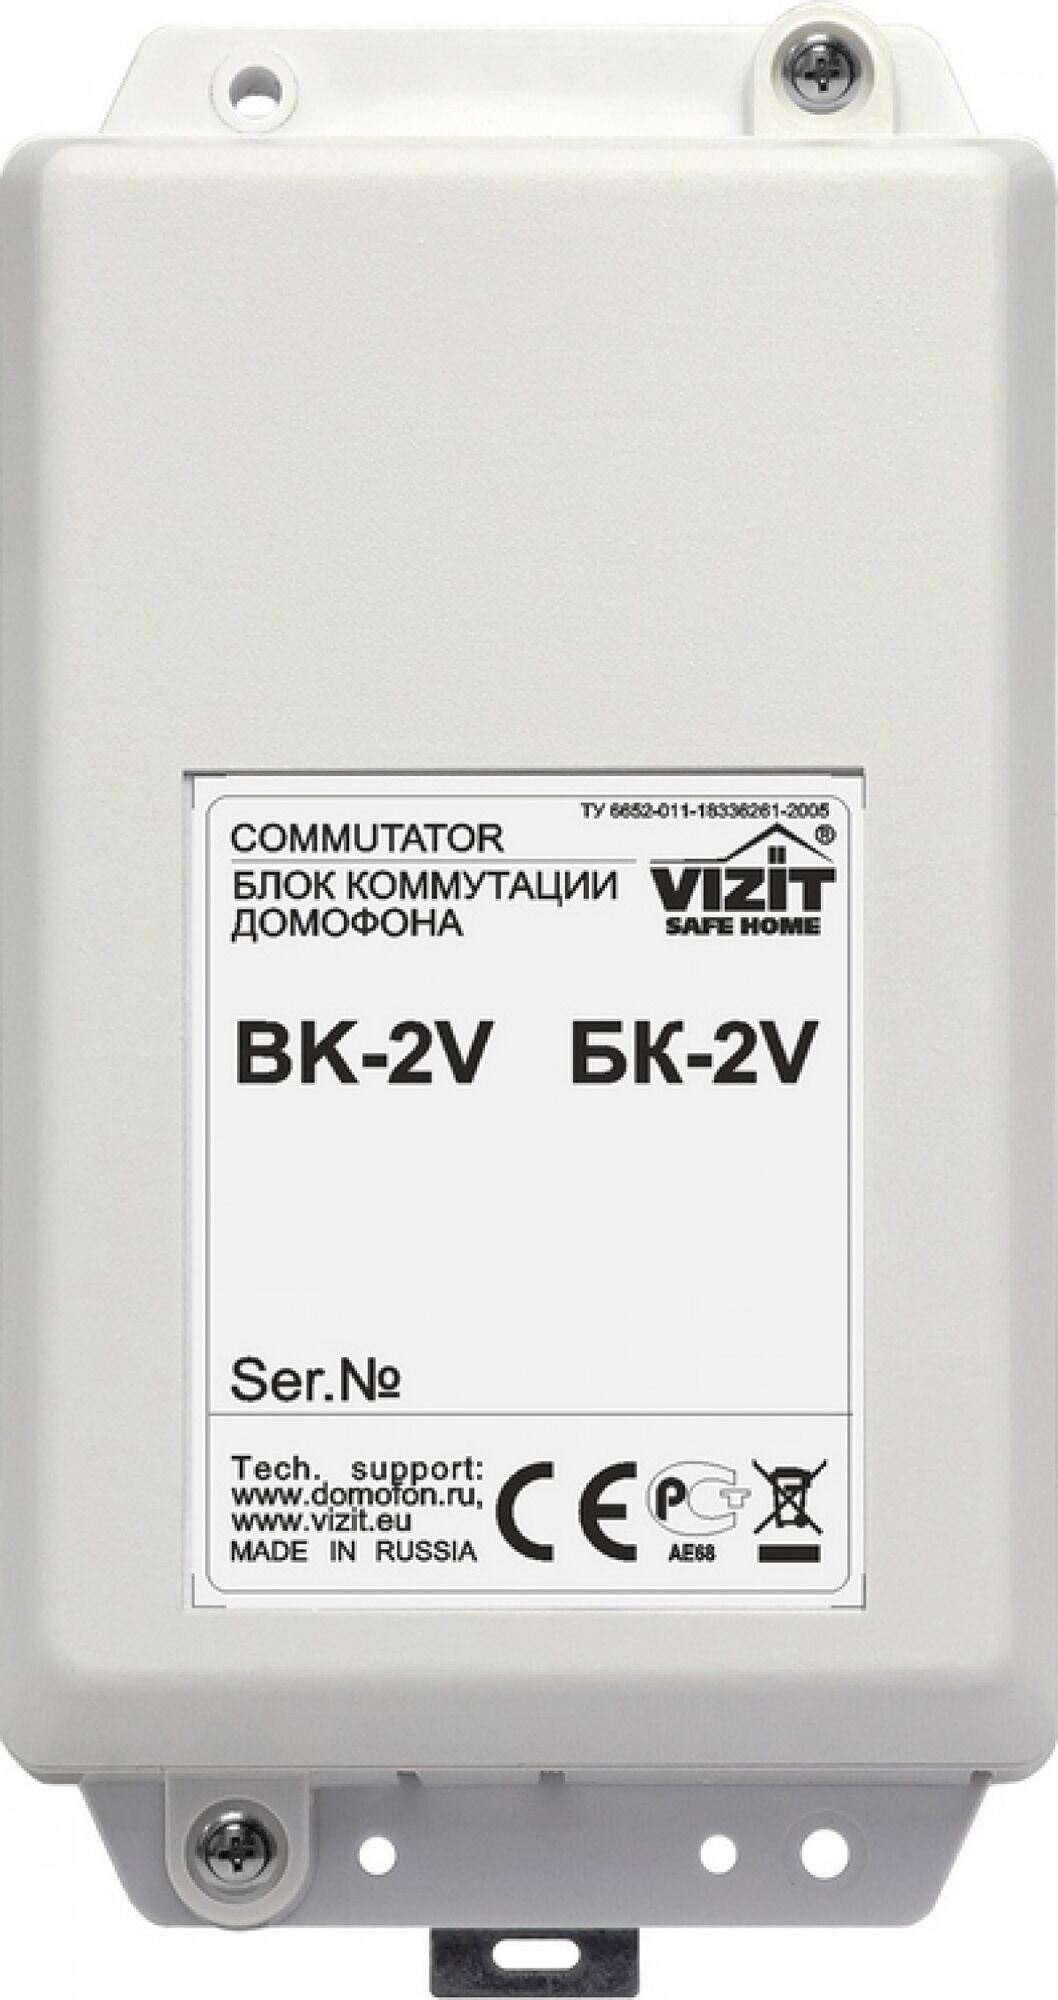 Оборудование для систем контроля доступа Vizit бк-2v